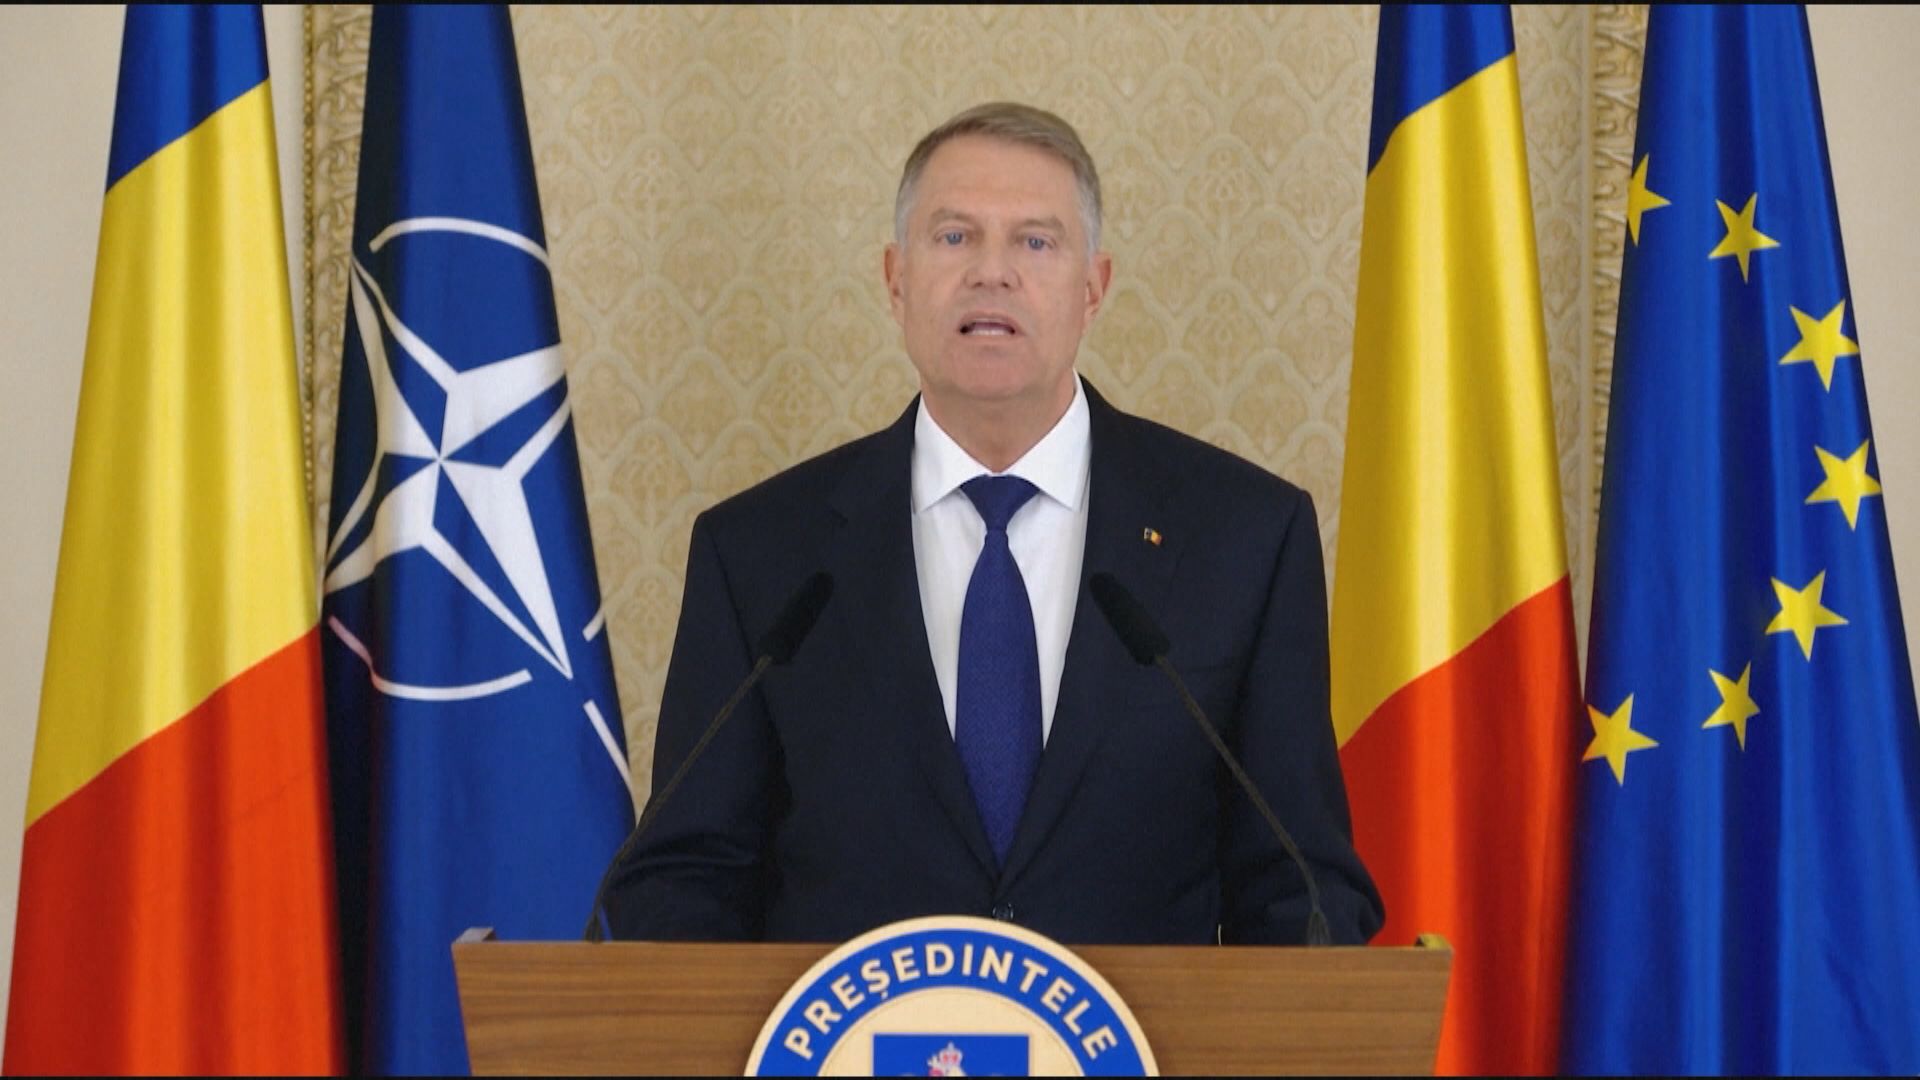 羅馬尼亞總統約翰尼斯宣布競選北約秘書長